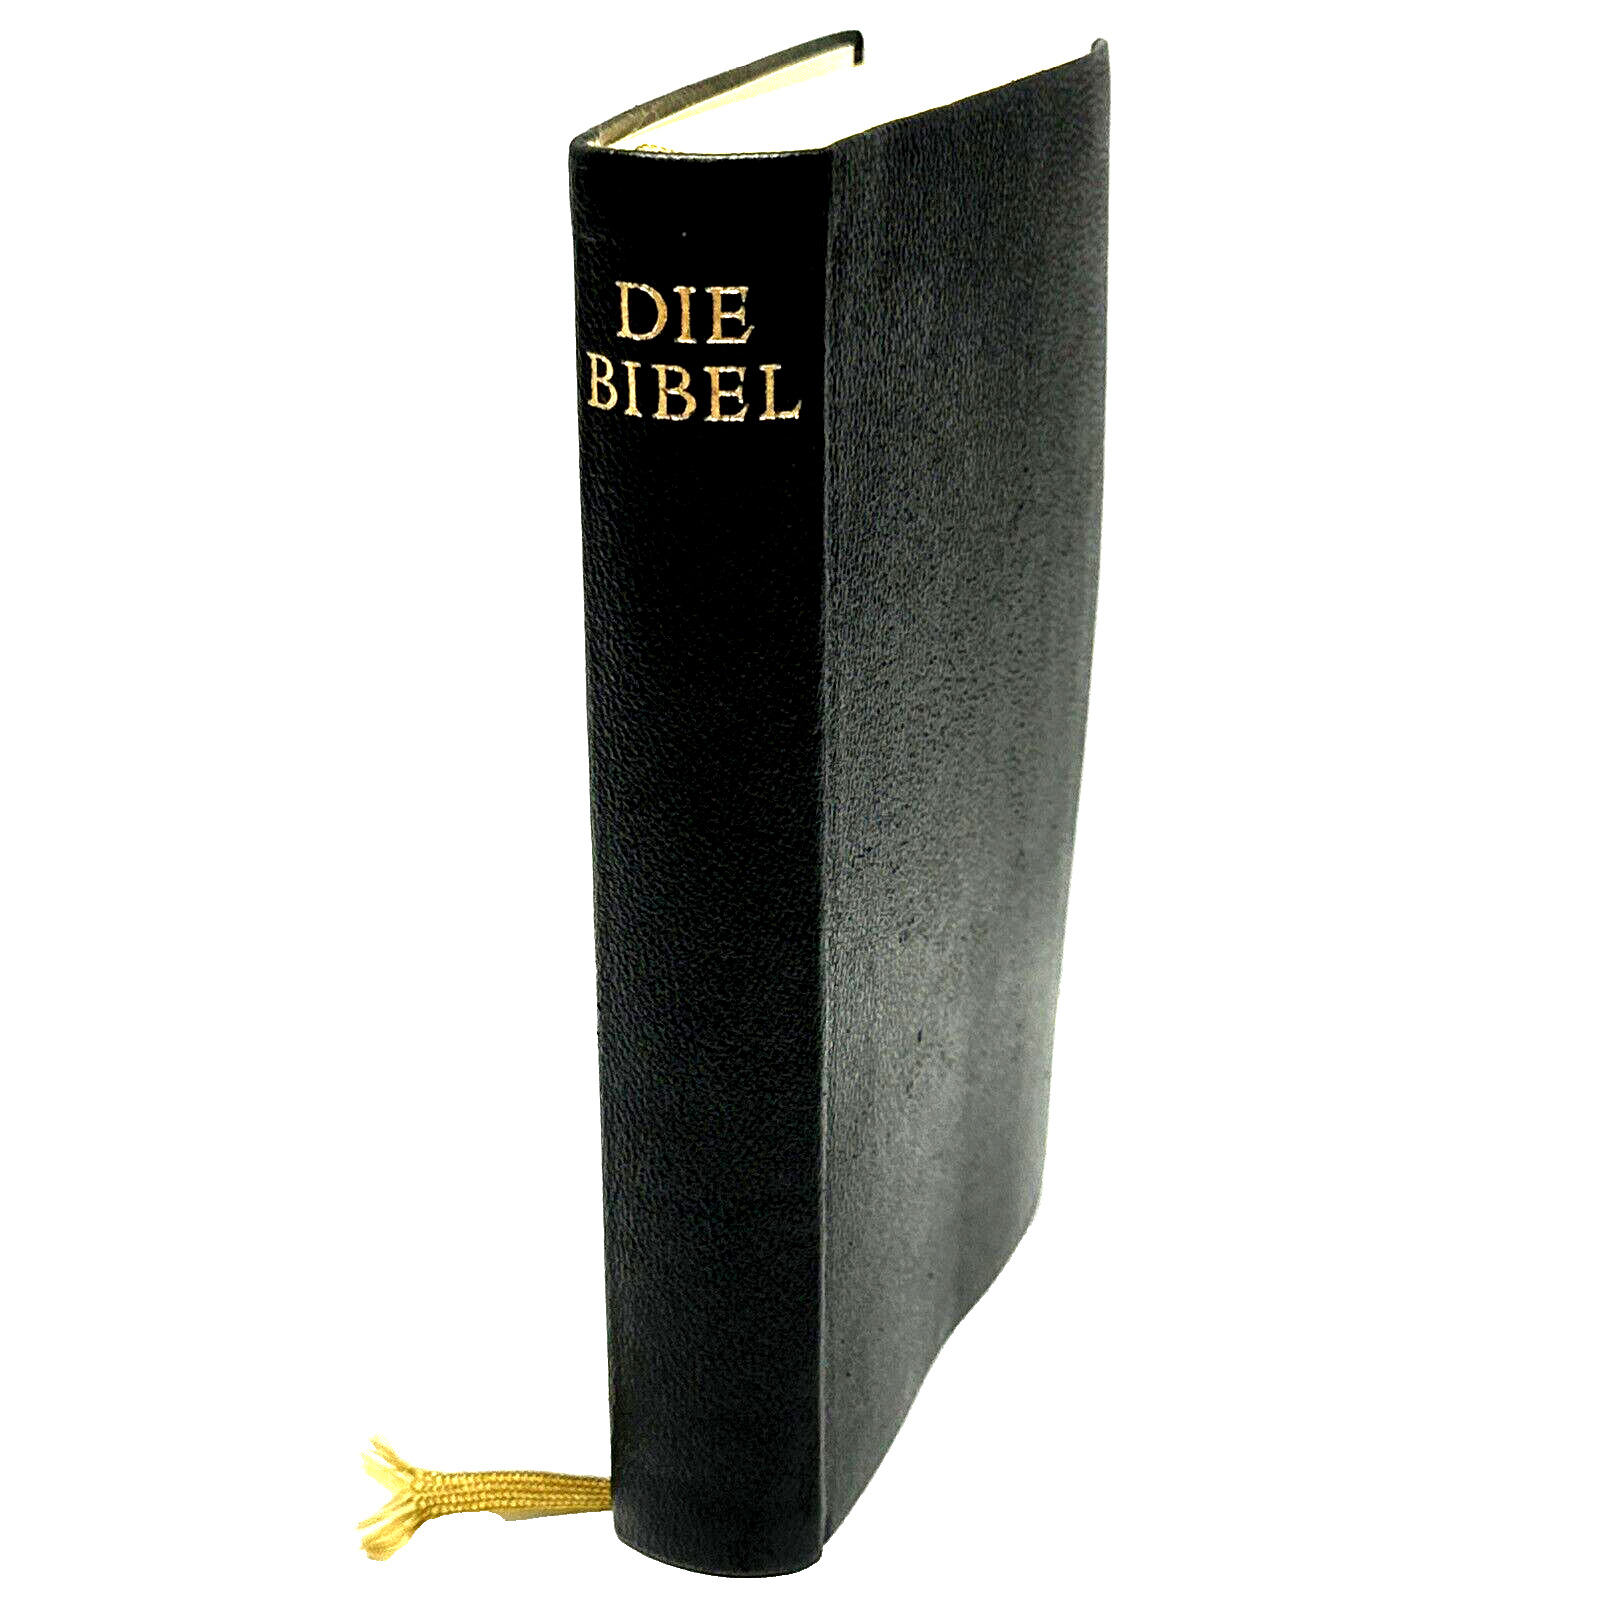 Die Bibel German Bible 1968 Printed In Germany Stuttgart Bonded leather